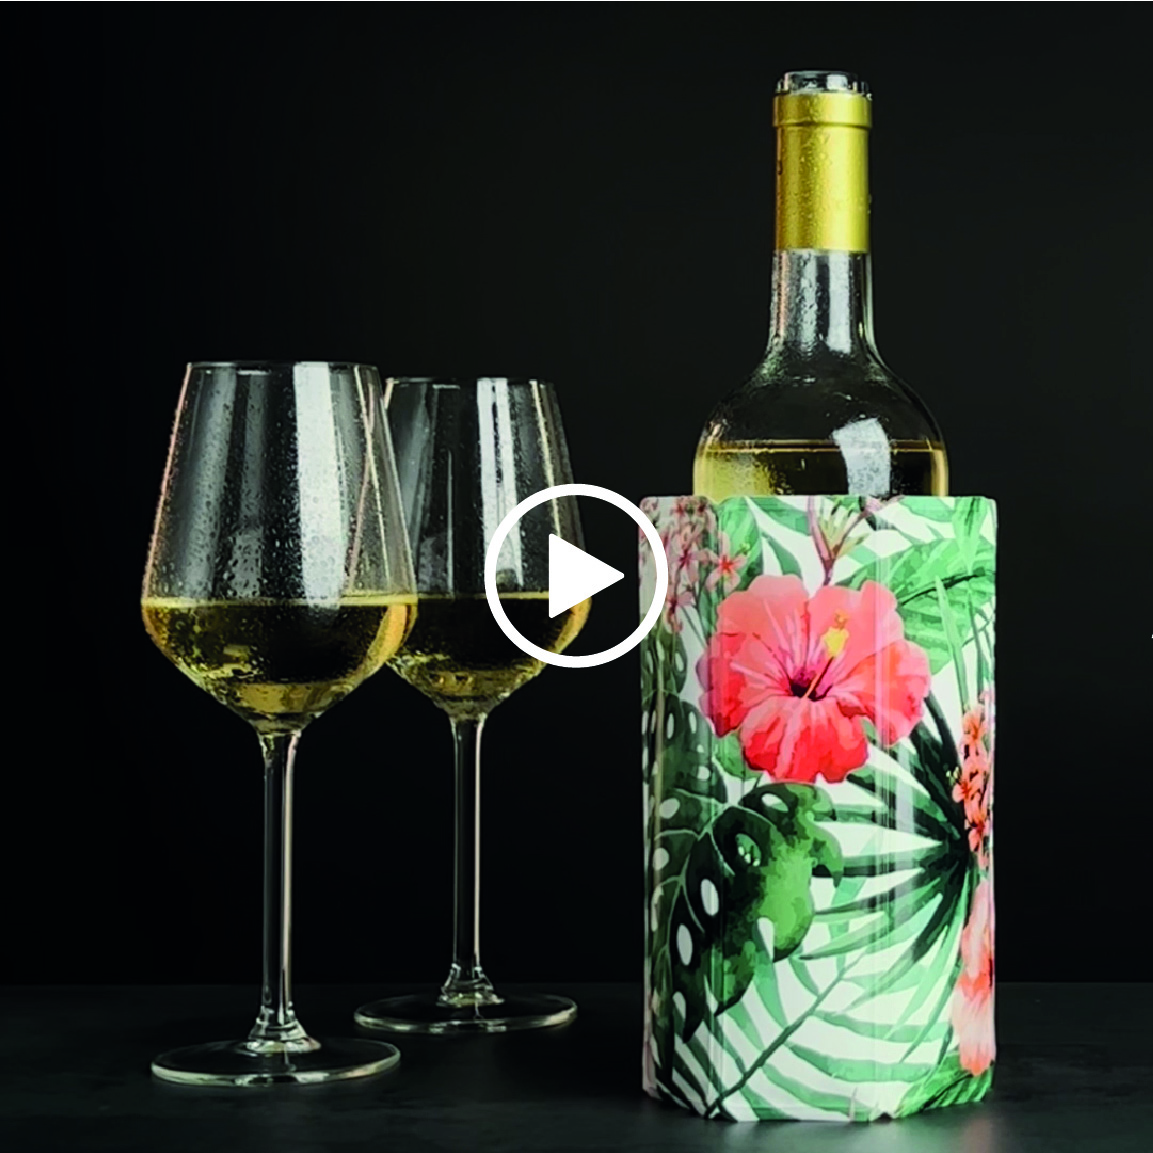 Vinglacé Wine Bottle Cooler, Wine Accessories